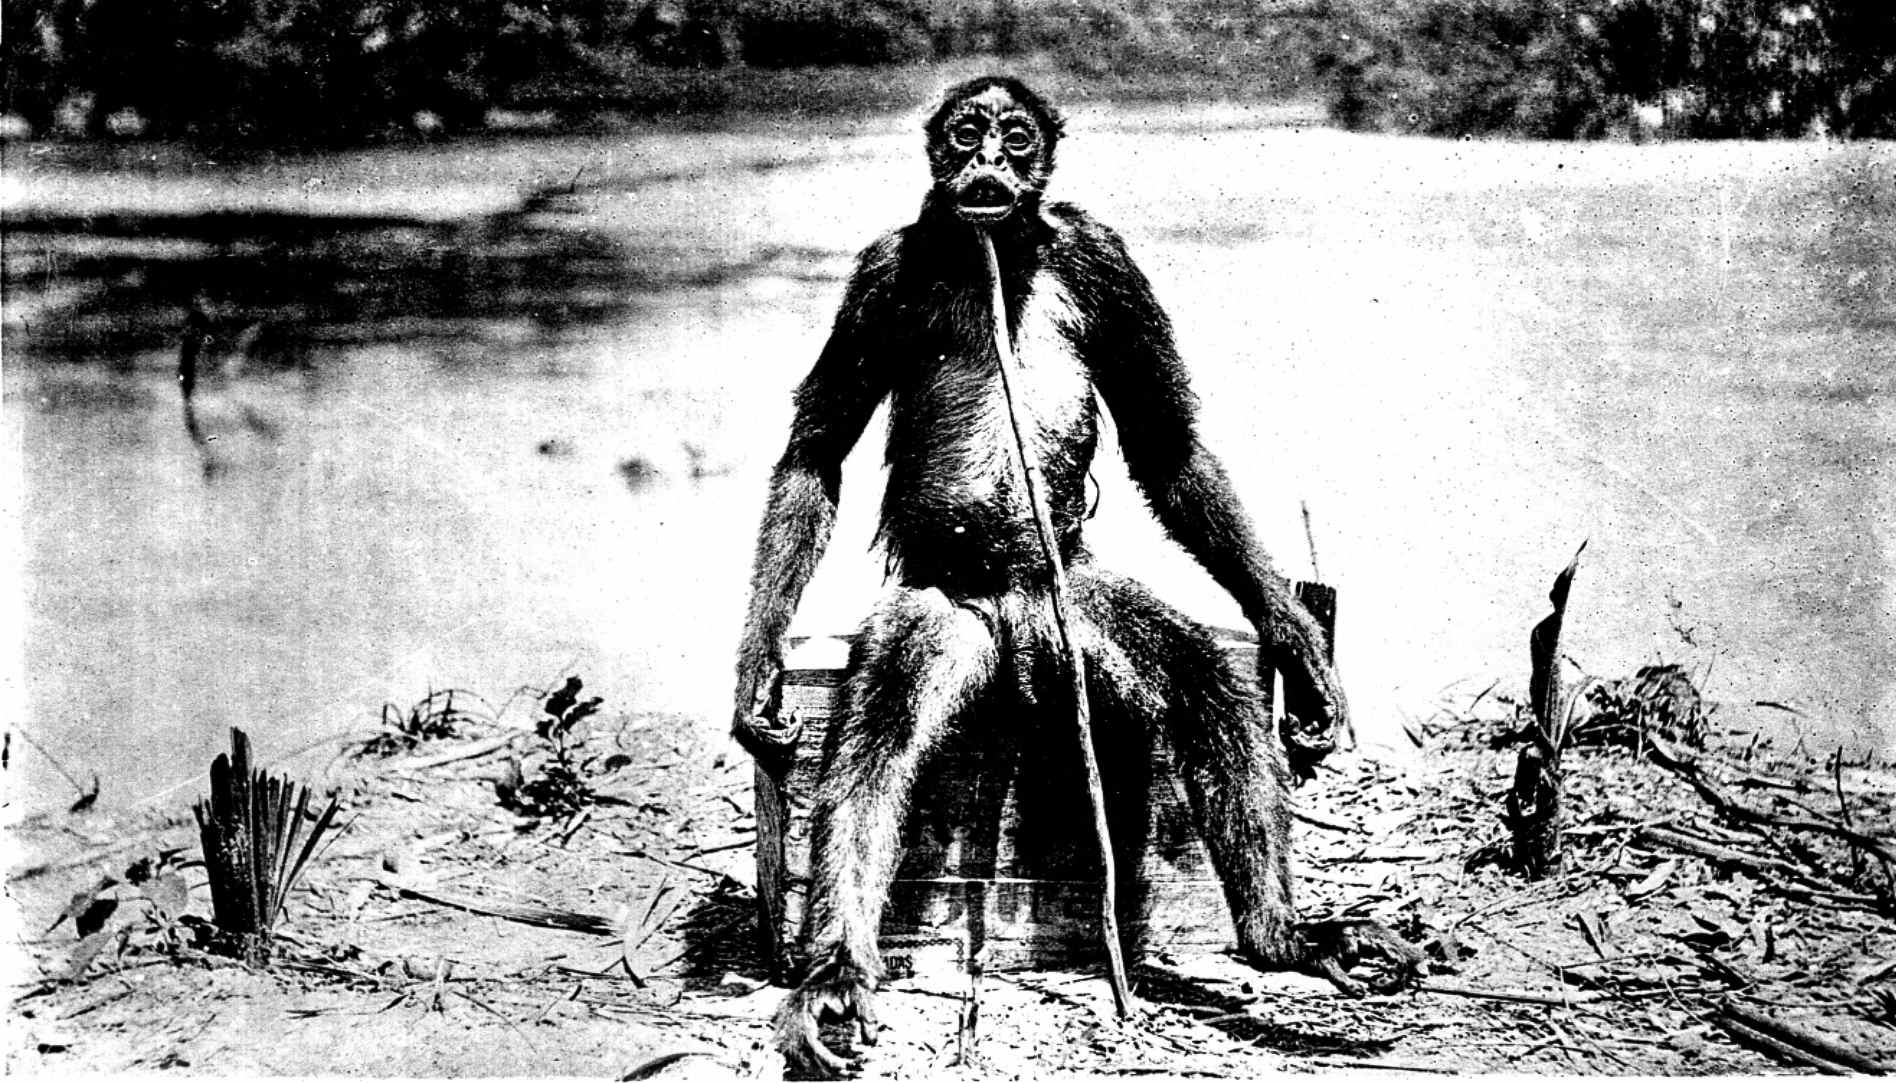 Ụdị foto a na-adịghị ahụkebe nke de Loys' ape - "Ameranthropoides loysi", site na 1929